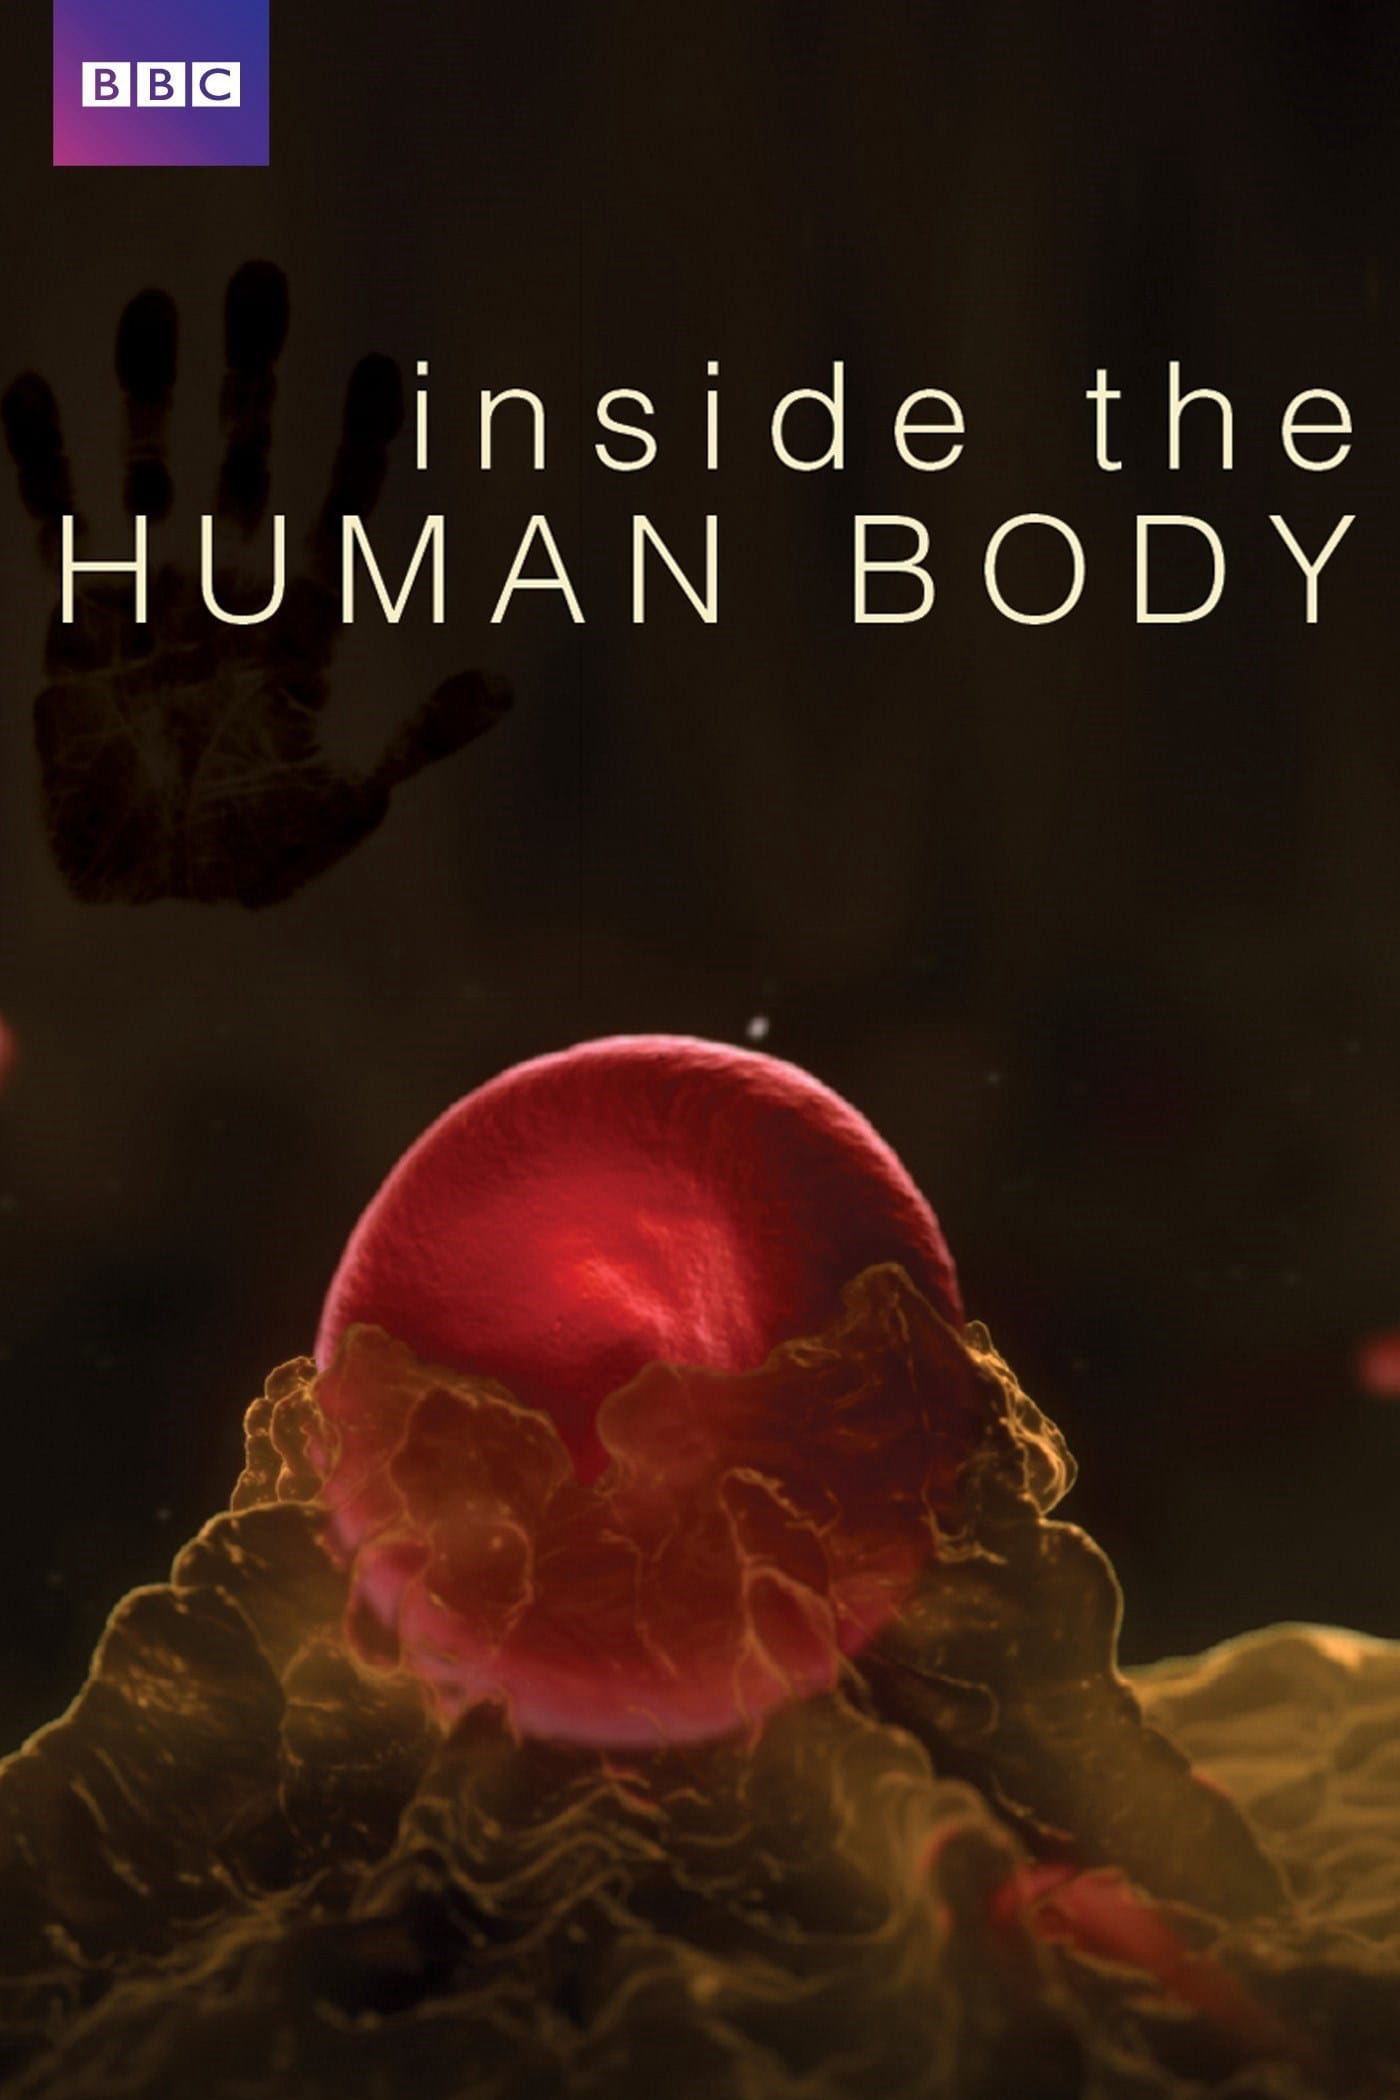 Inside the Human Body - Inside the Human Body